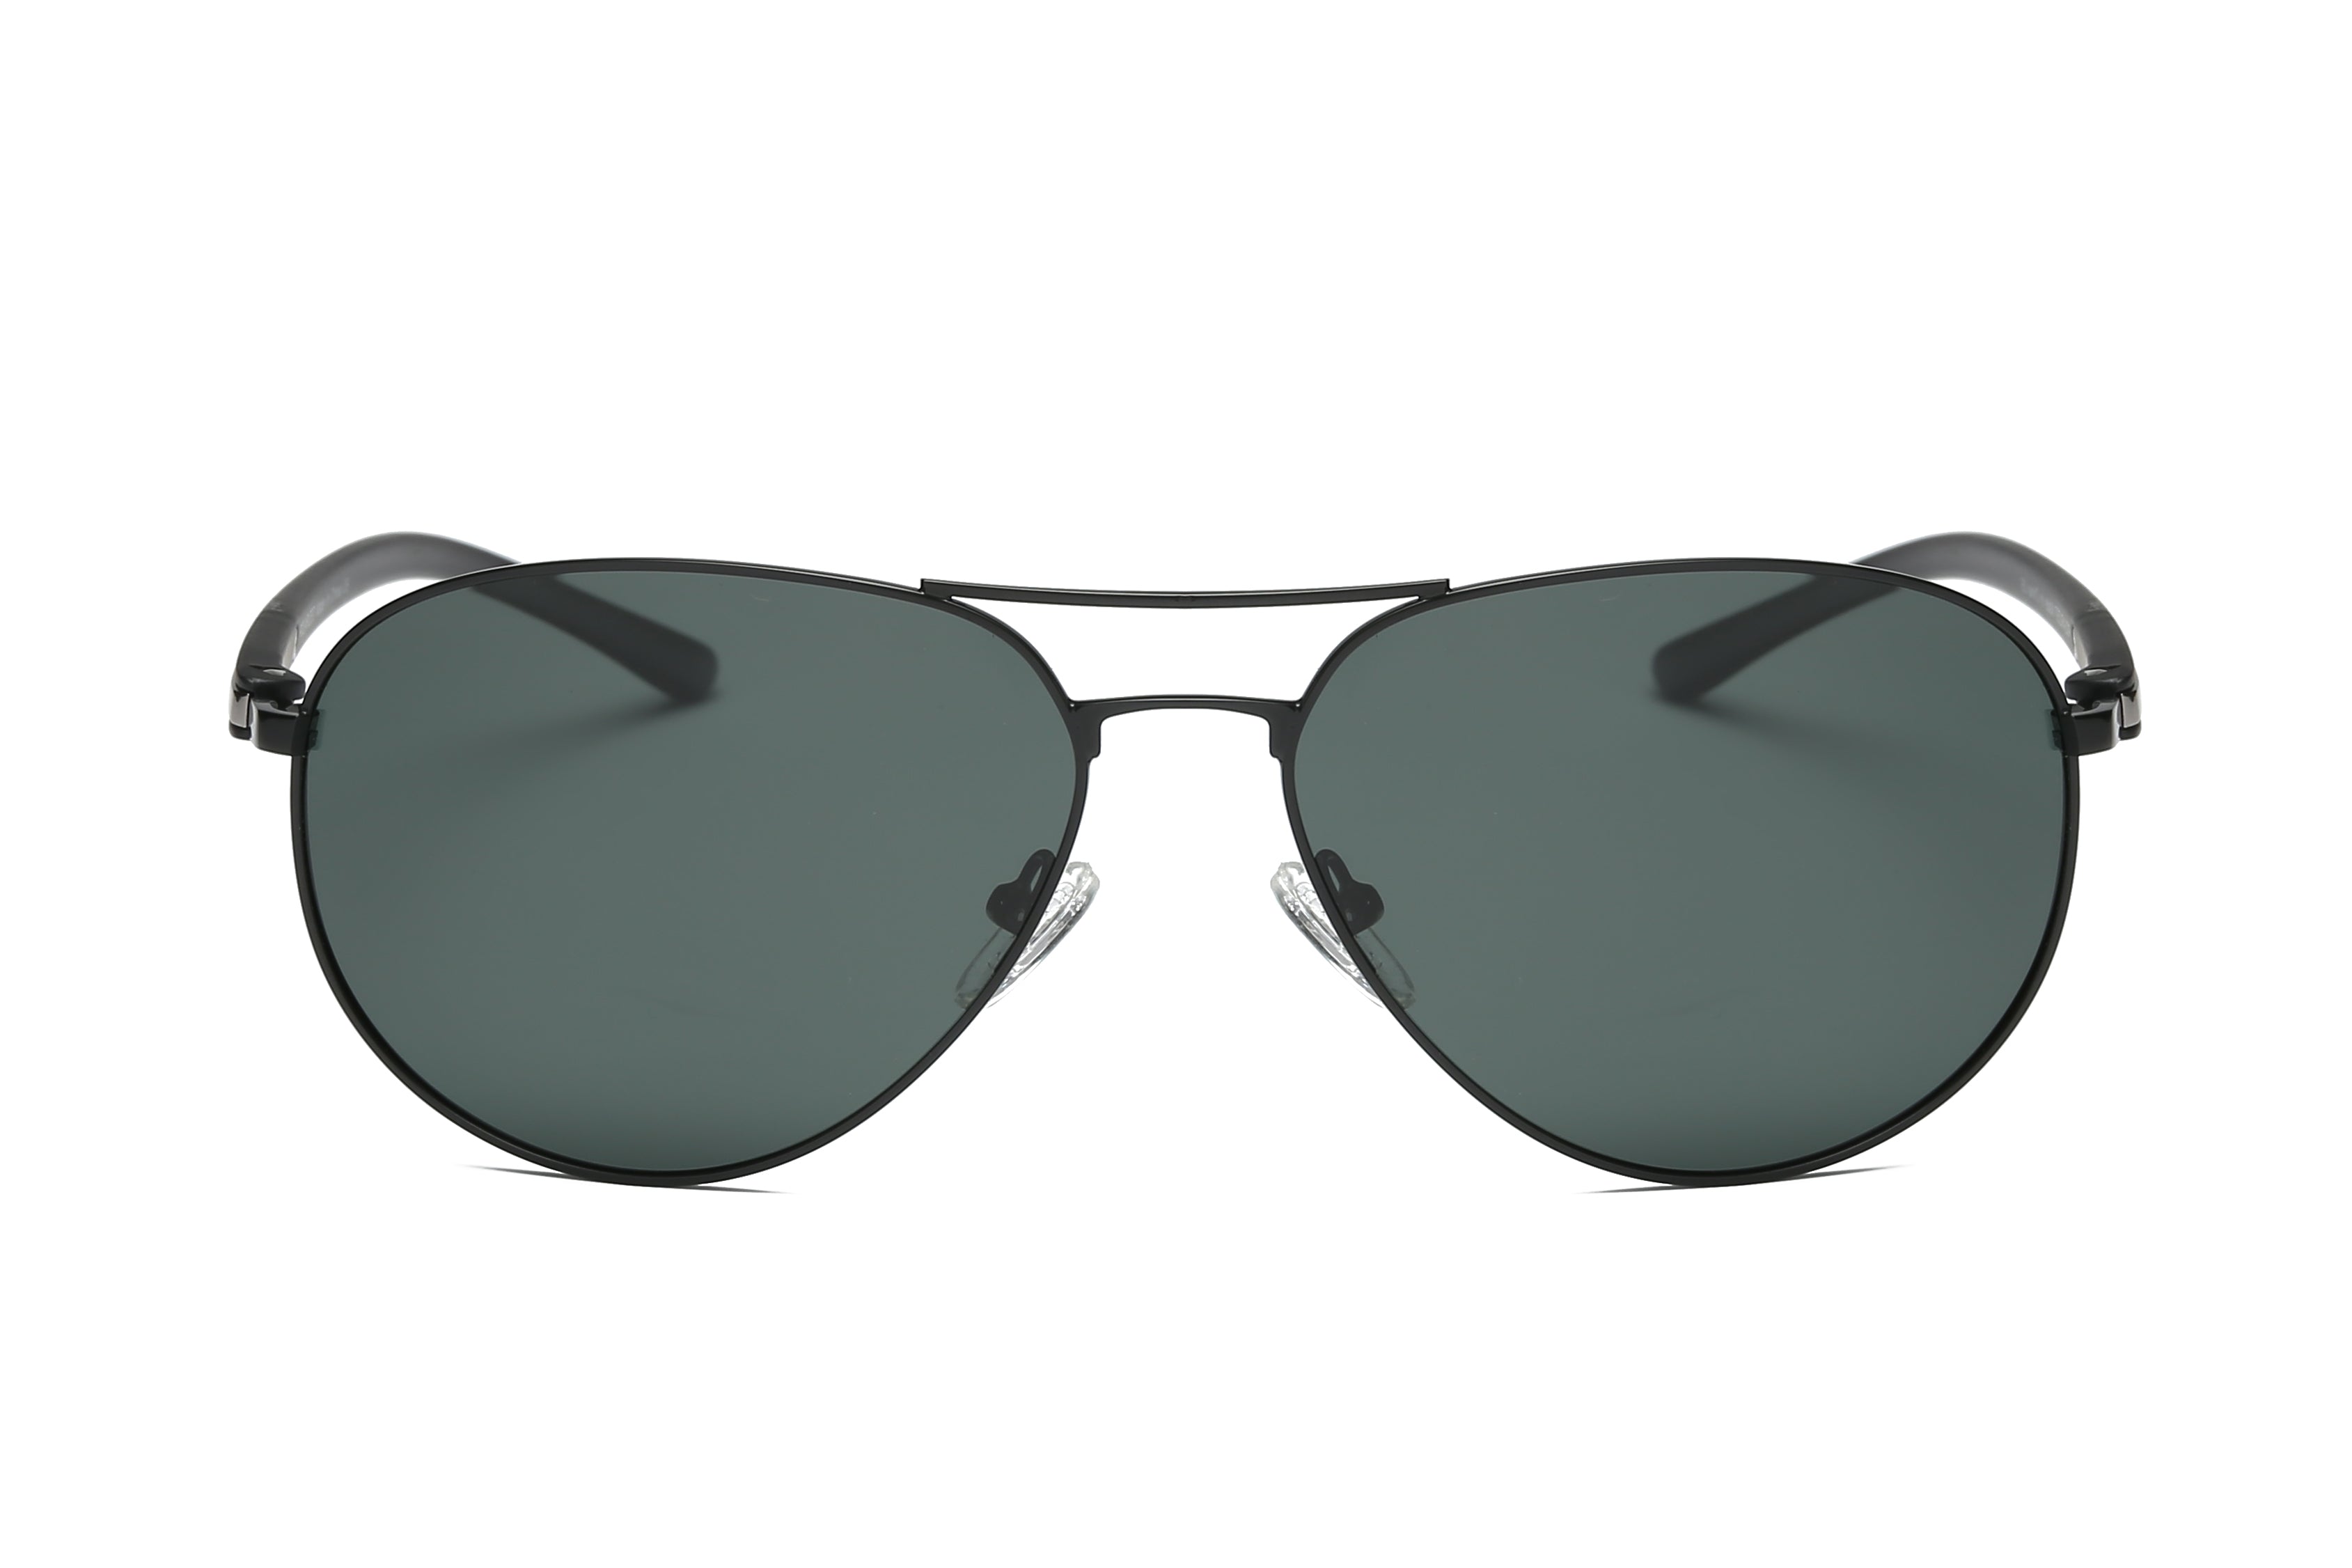 P4001 - Classic Polarized Aviator Sunglasses - Iris Fashion Inc. | Wholesale Sunglasses and Glasses